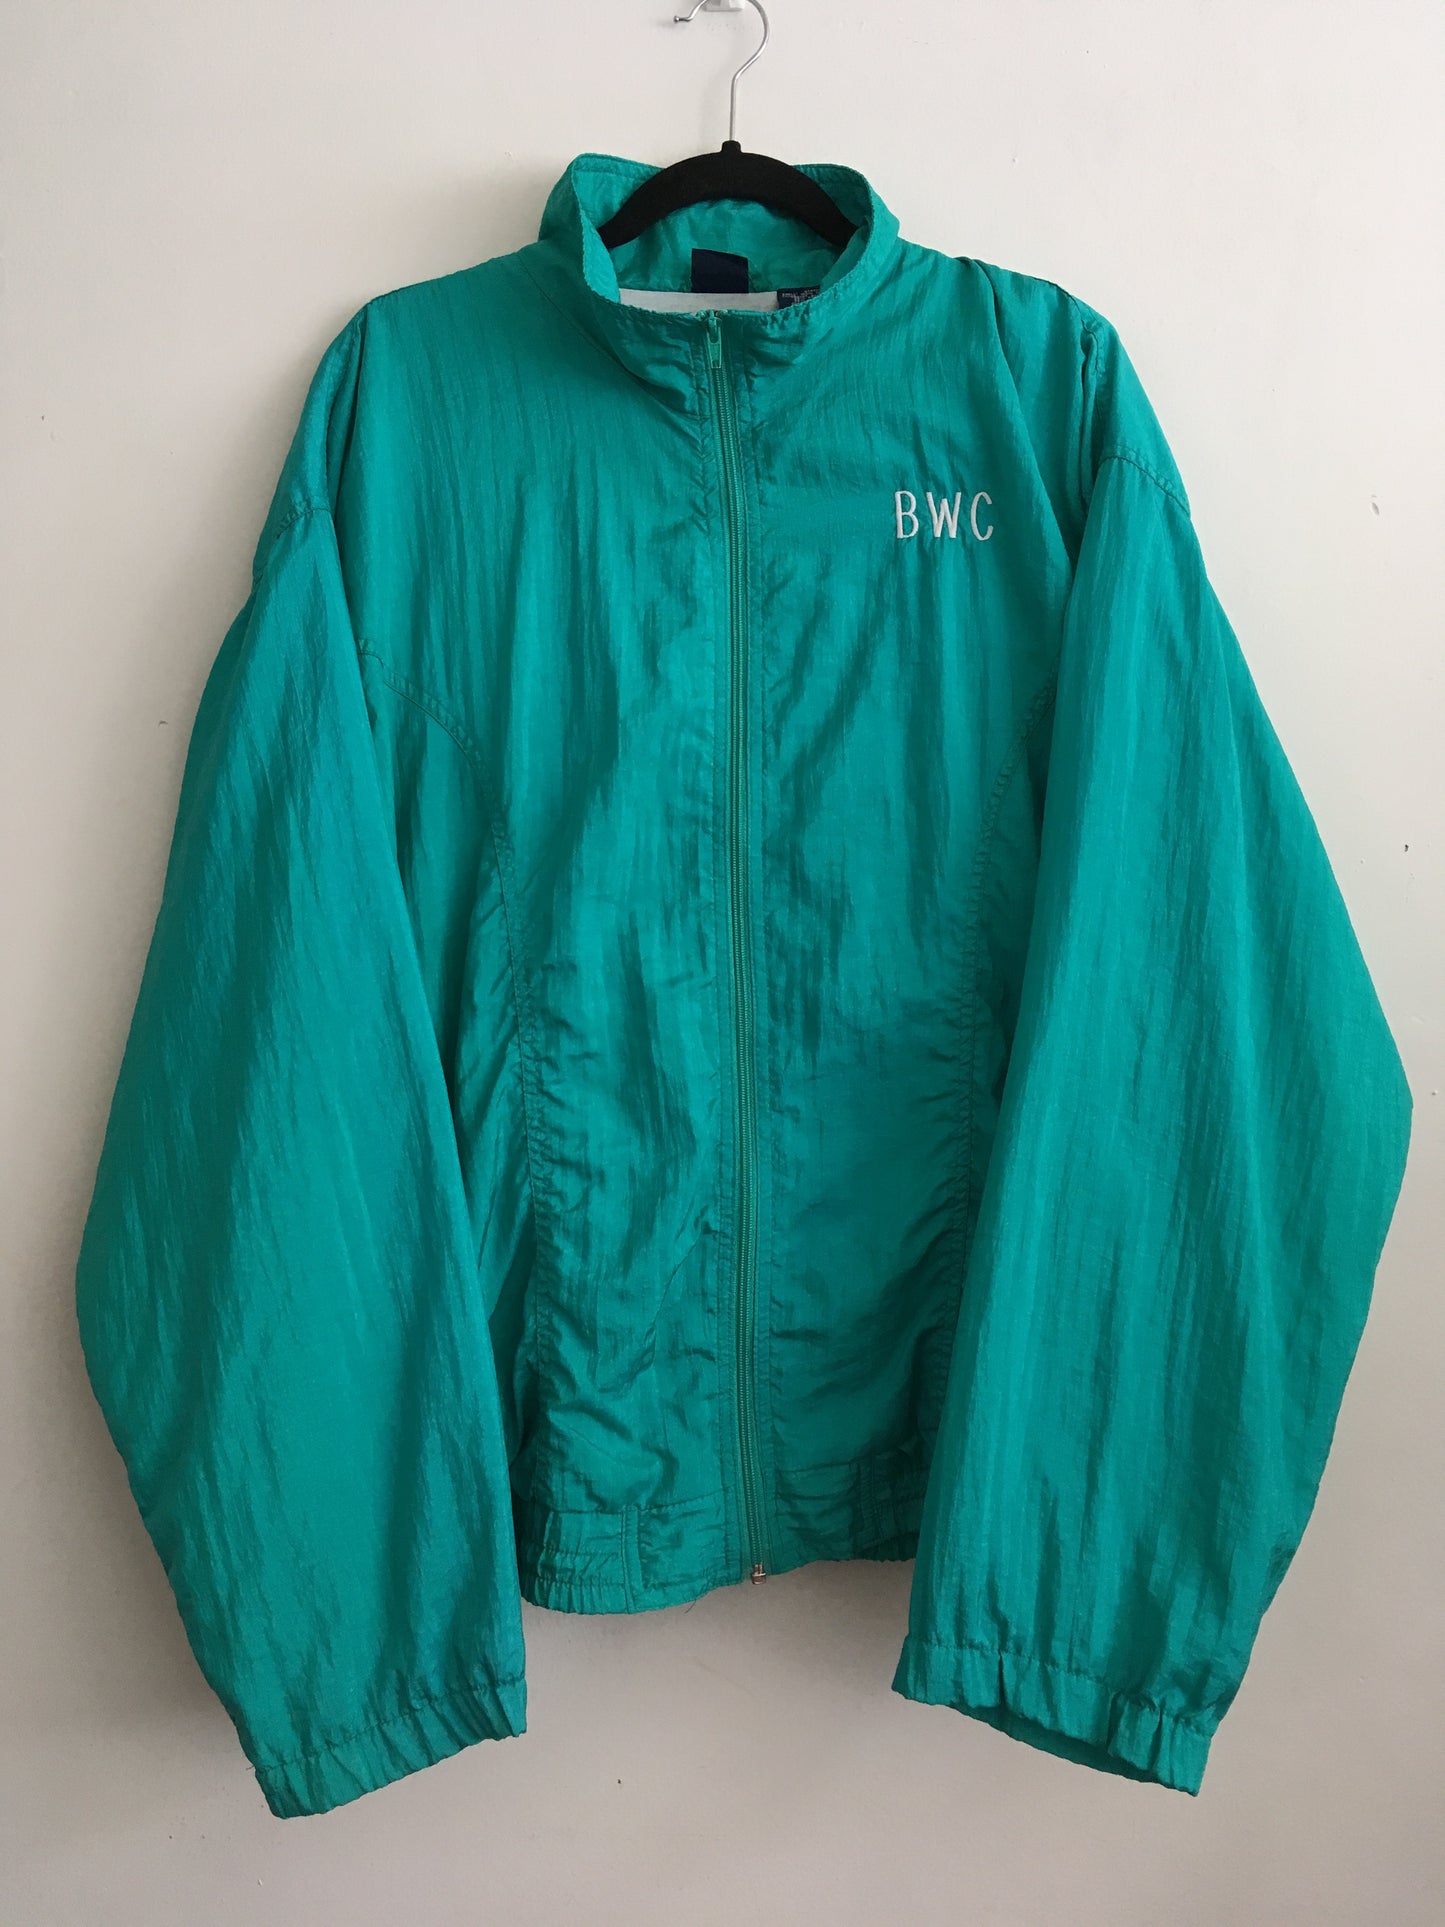 Aqua 80s jacket